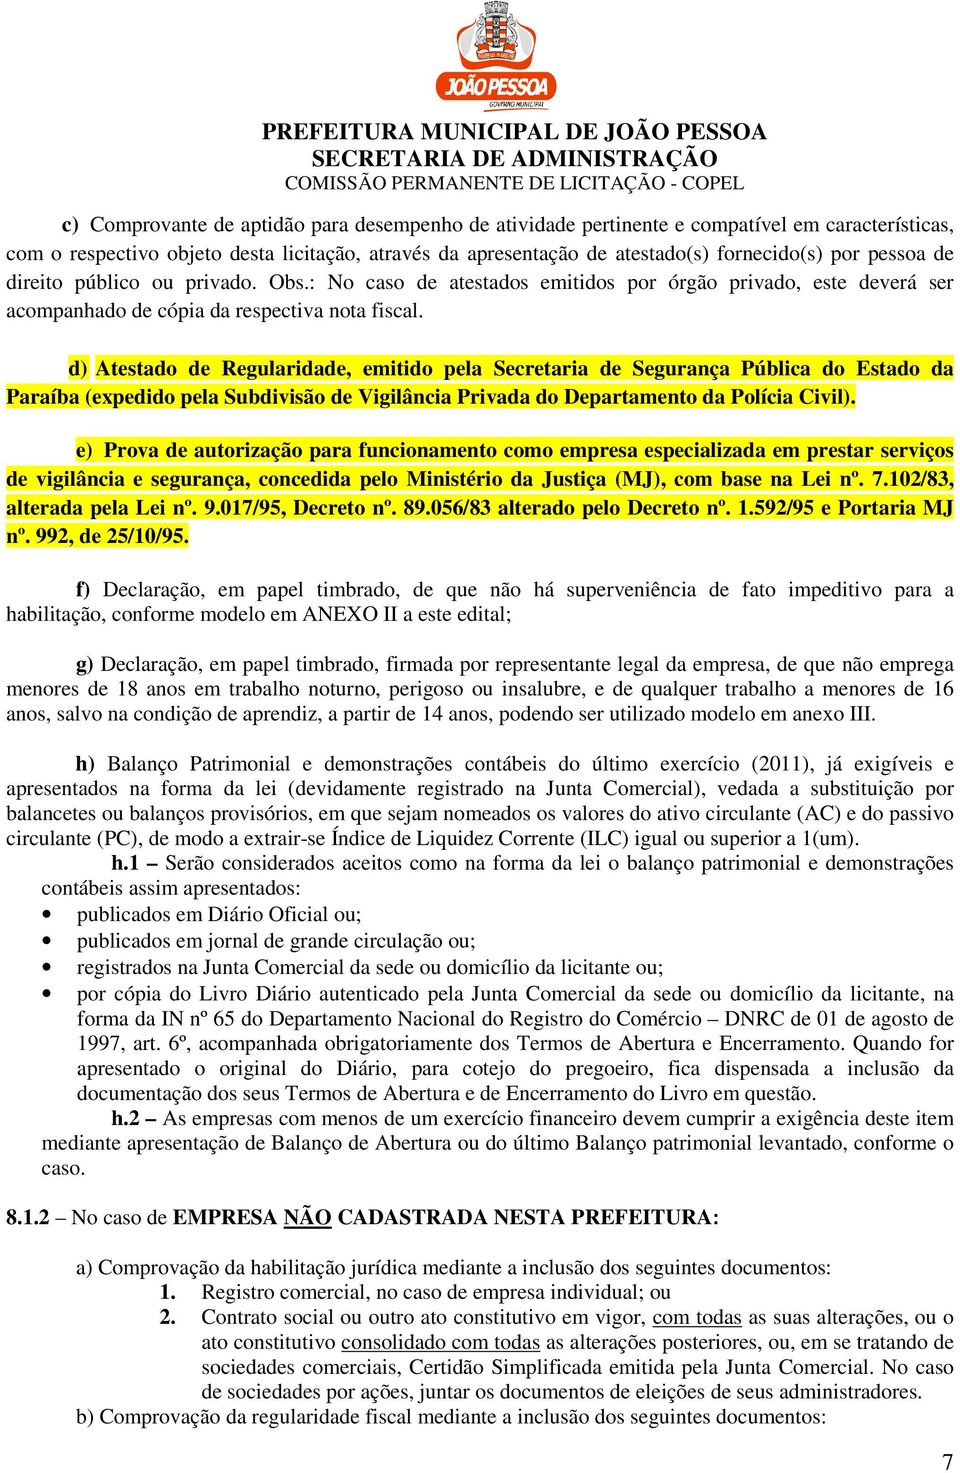 d) Atestado de Regularidade, emitido pela Secretaria de Segurança Pública do Estado da Paraíba (expedido pela Subdivisão de Vigilância Privada do Departamento da Polícia Civil).